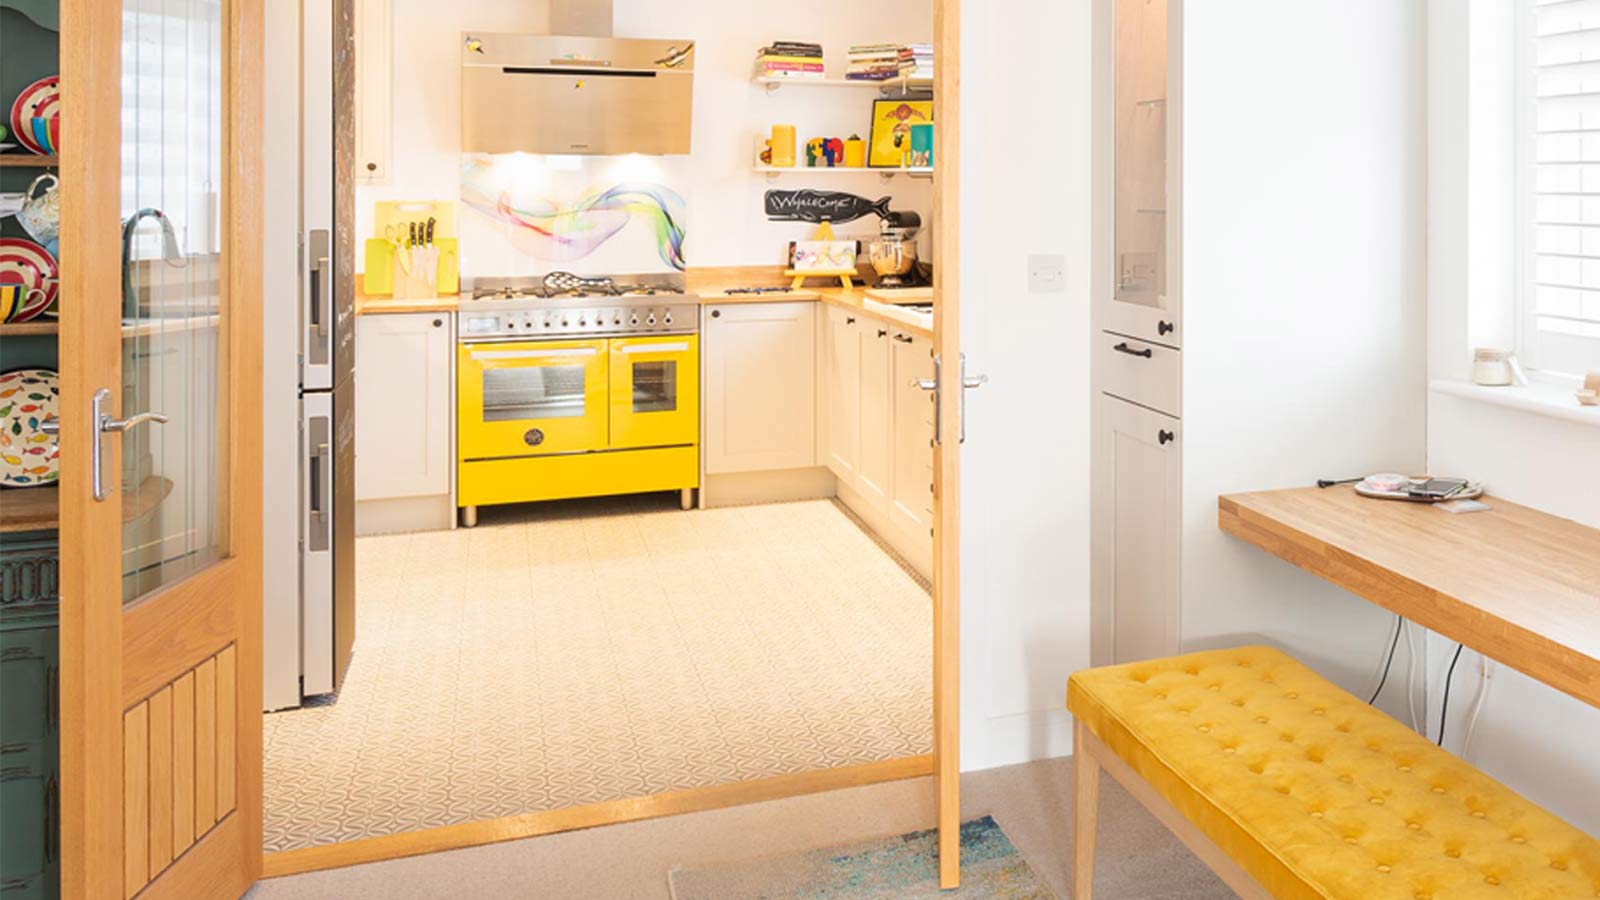 A kitsch kitchen with yellow retro kitchen décor